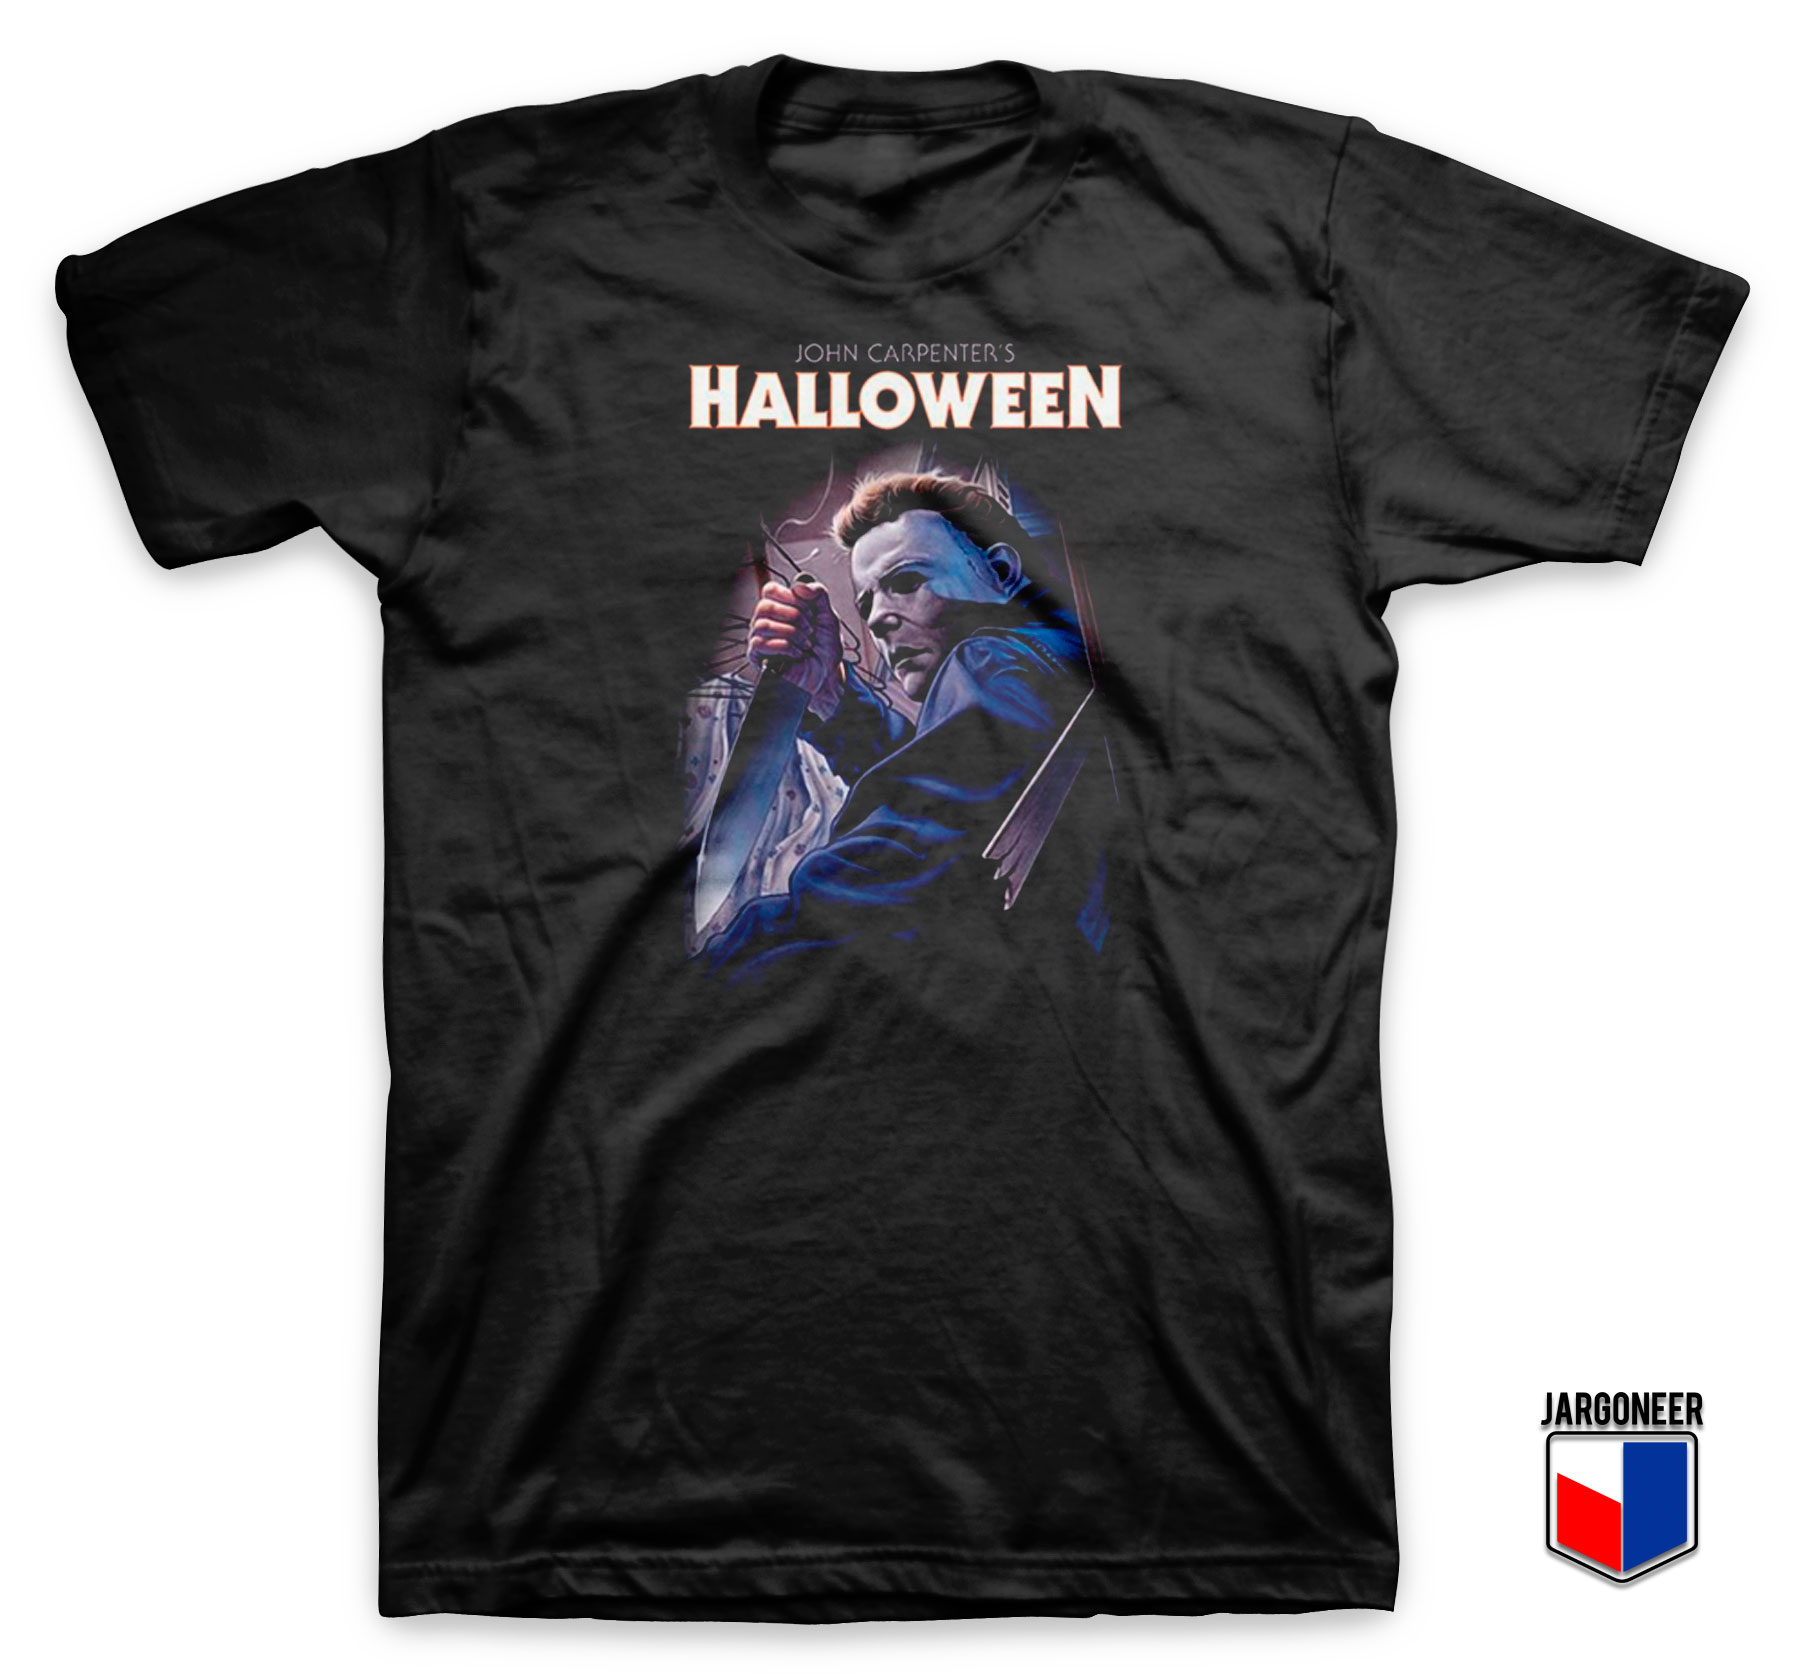 John Carpenters Halloween T Shirt - Shop Unique Graphic Cool Shirt Designs